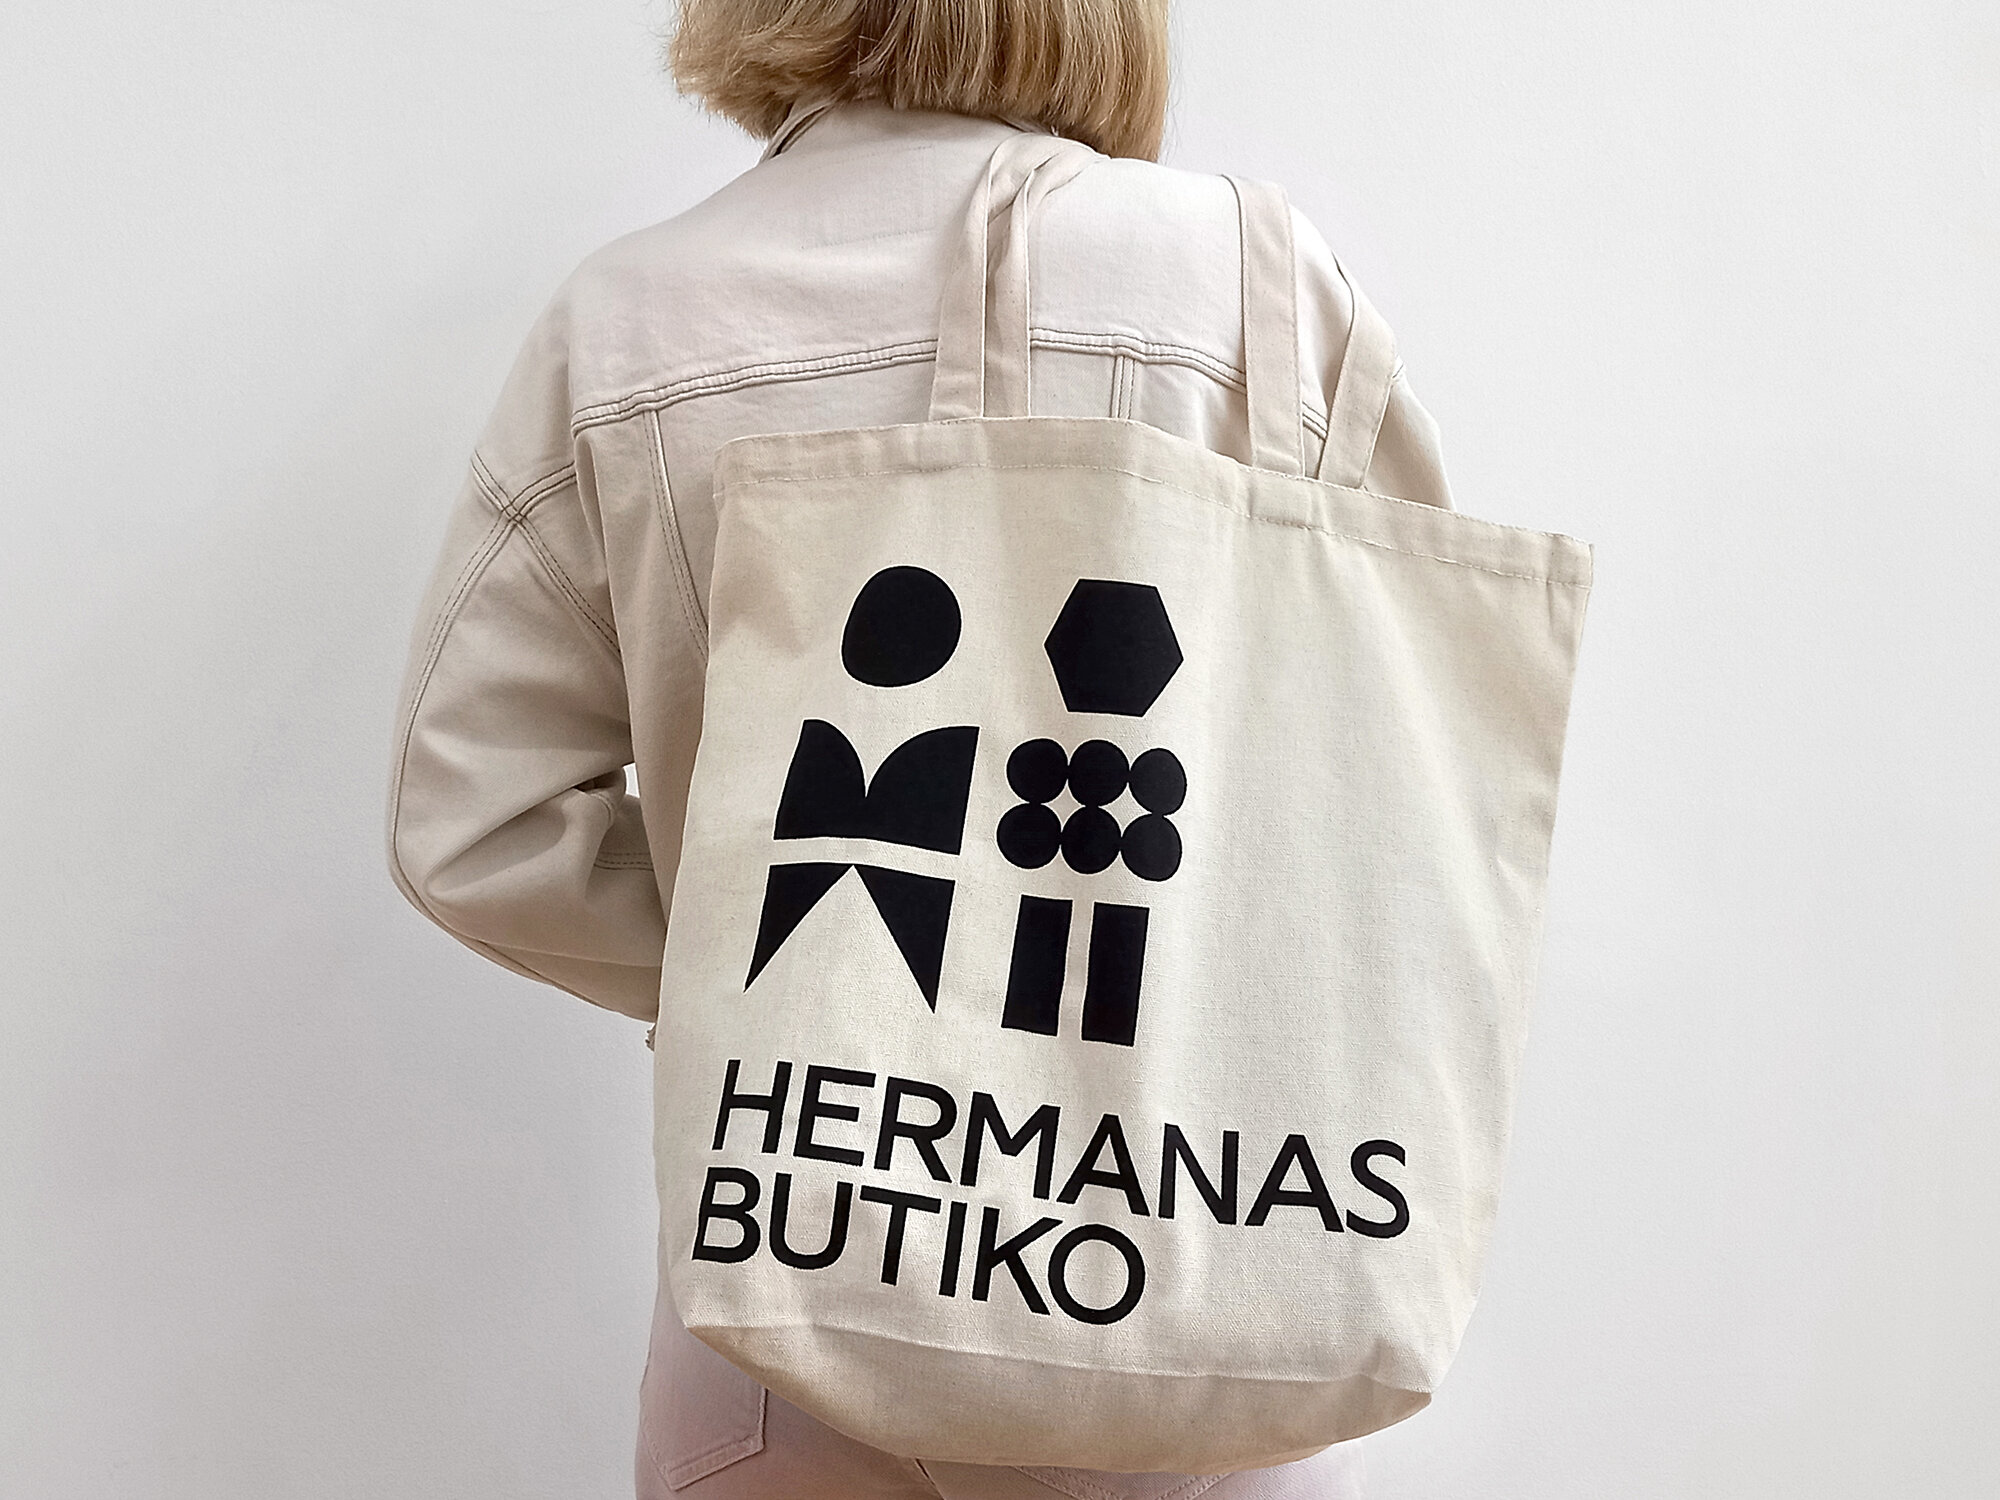 Hermanas Butiko - Tote Bag.jpg